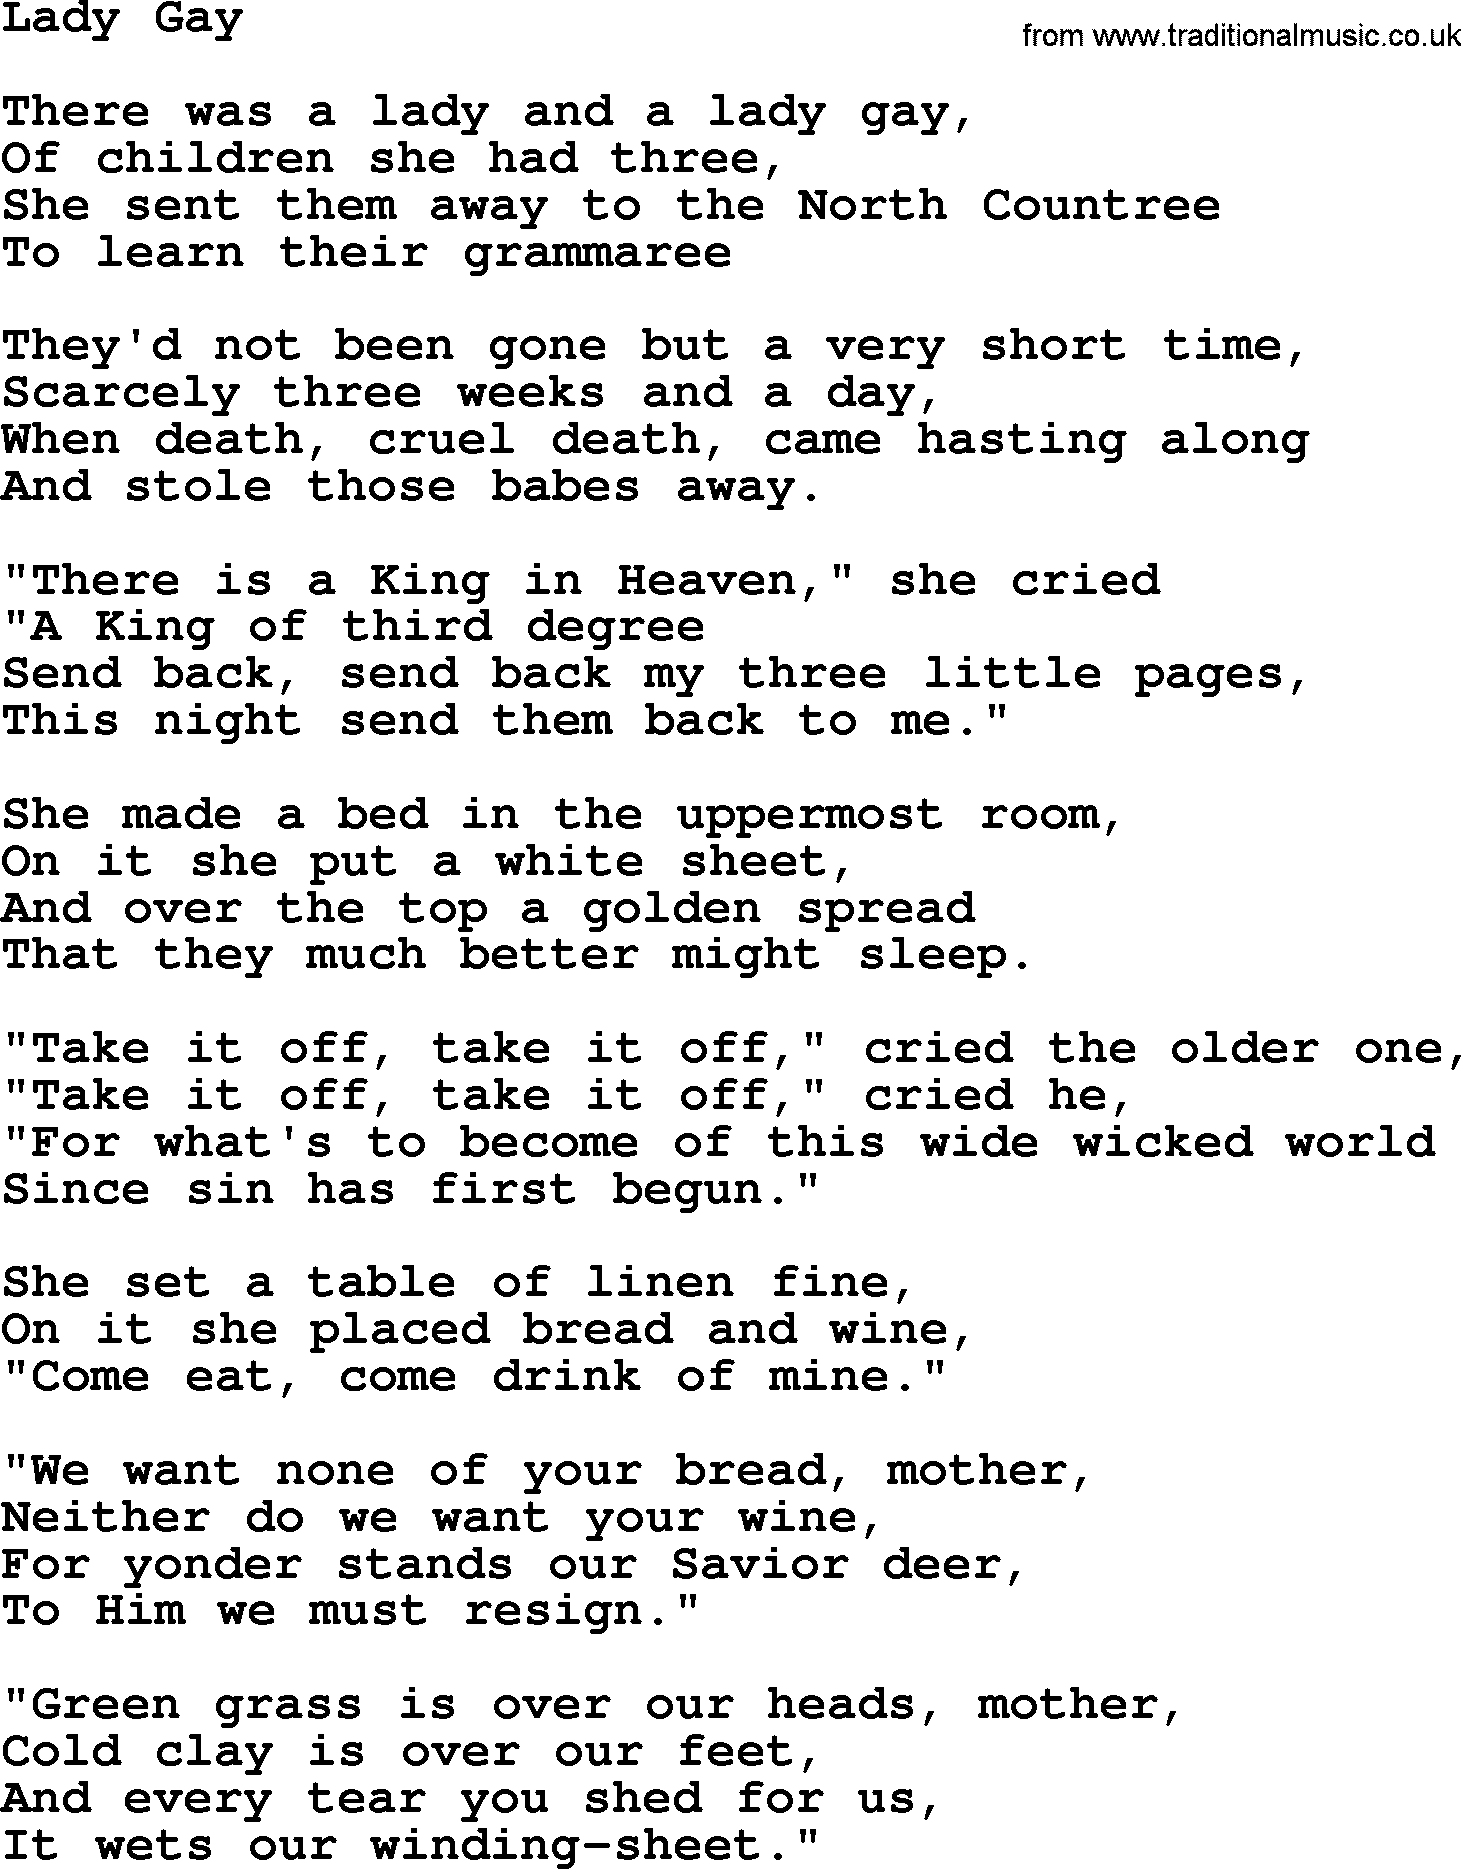 Joan Baez song Lady Gay, lyrics